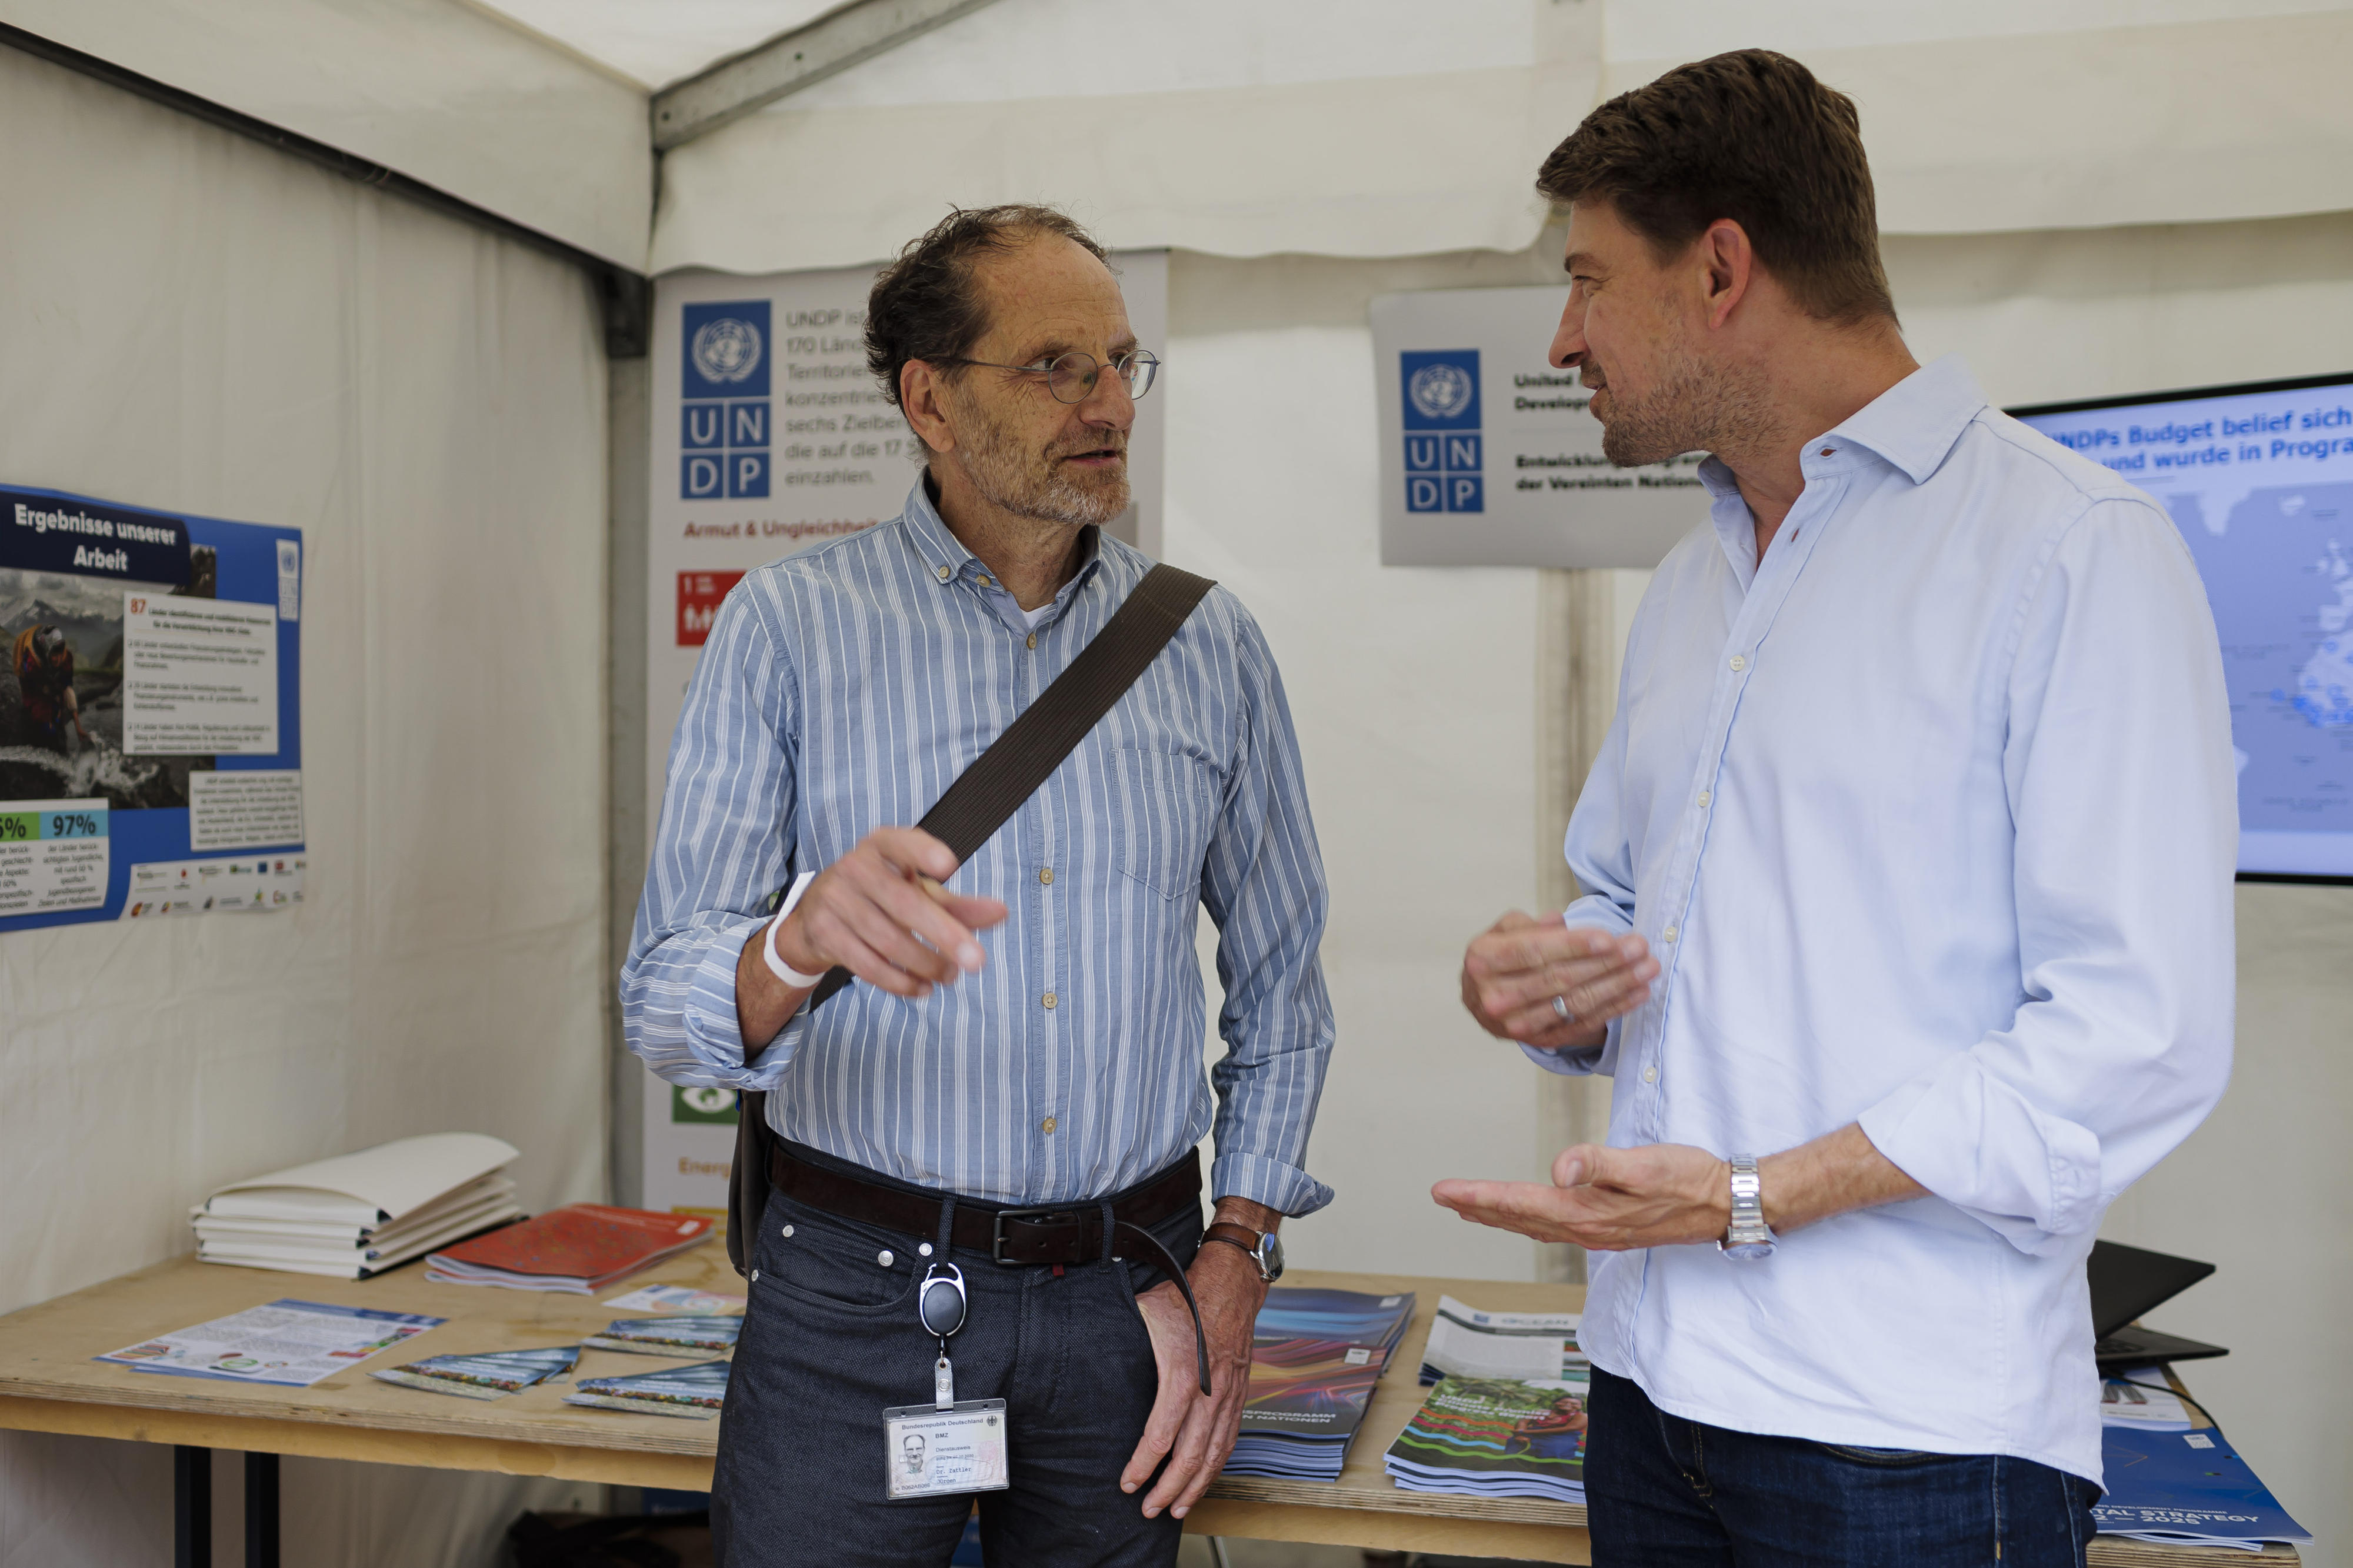 BMZ-Abteilungsleiter Dr. Jürgen Zattler besucht den Informationsstand des Entwicklungsprogramms der Vereinten Nationen (UNDP), mit dem das BMZ eng zusammenarbeitet.